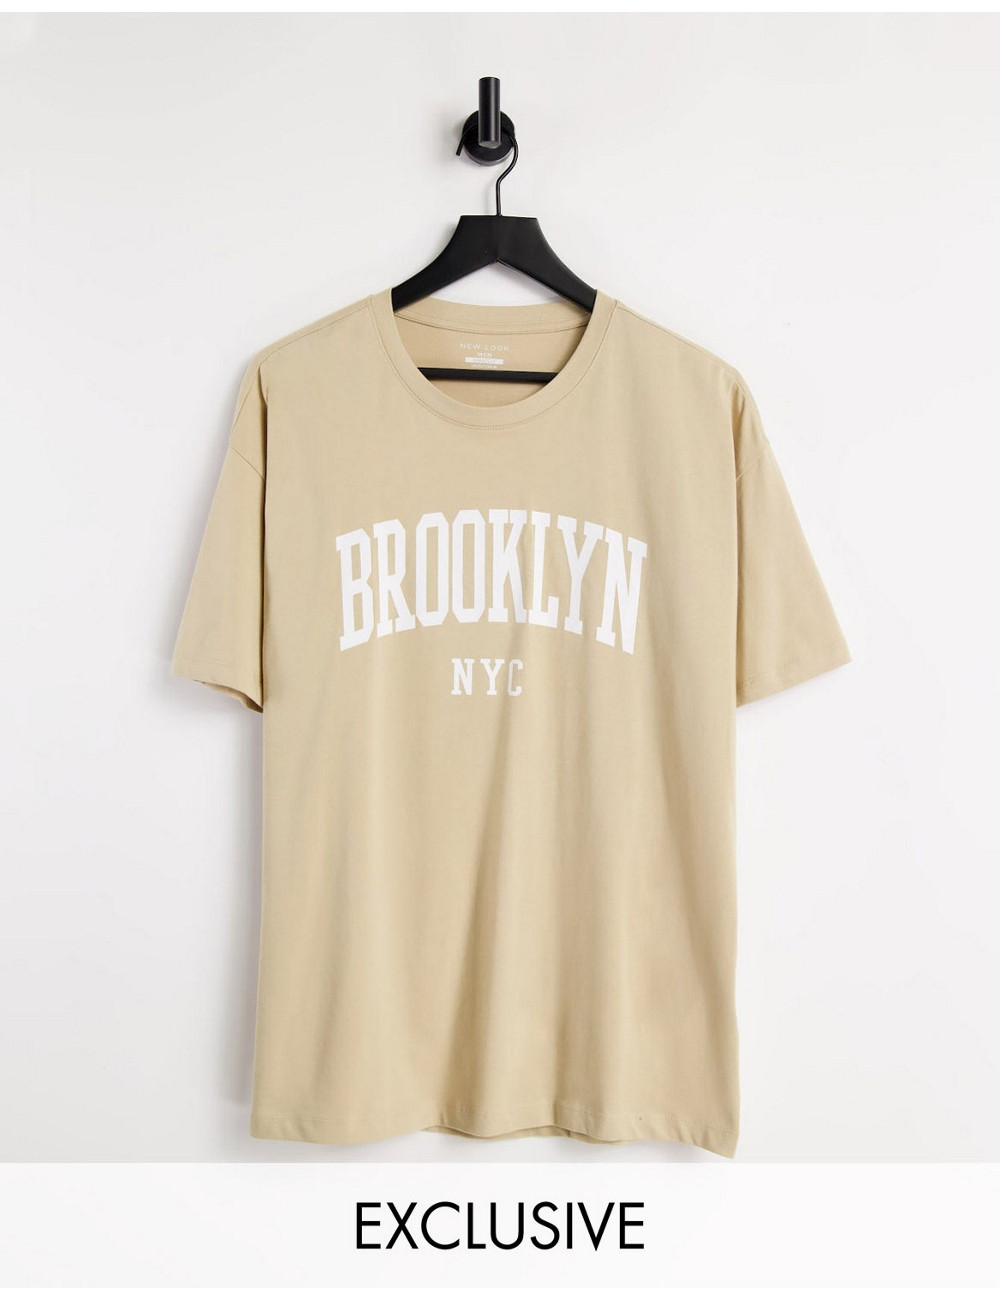 New Look Brooklyn t-shirt...